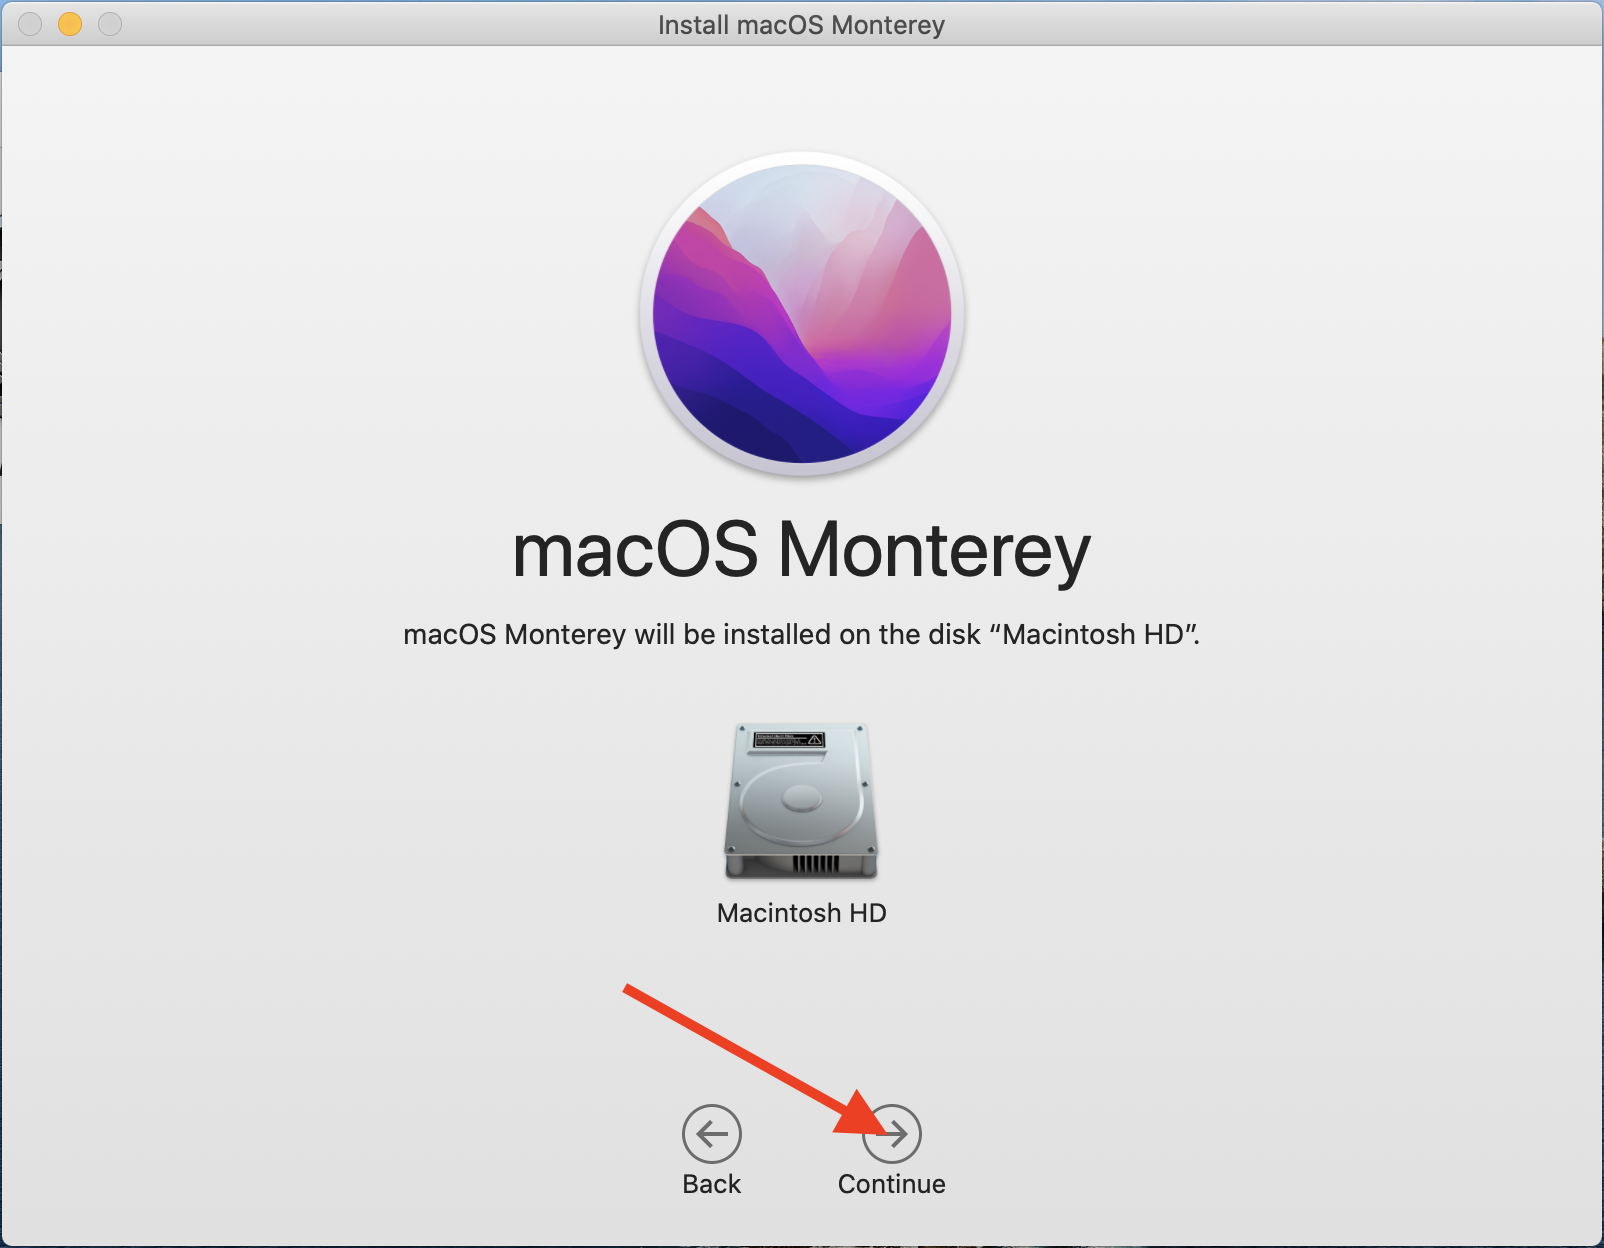 macOS upgrade continue to final step